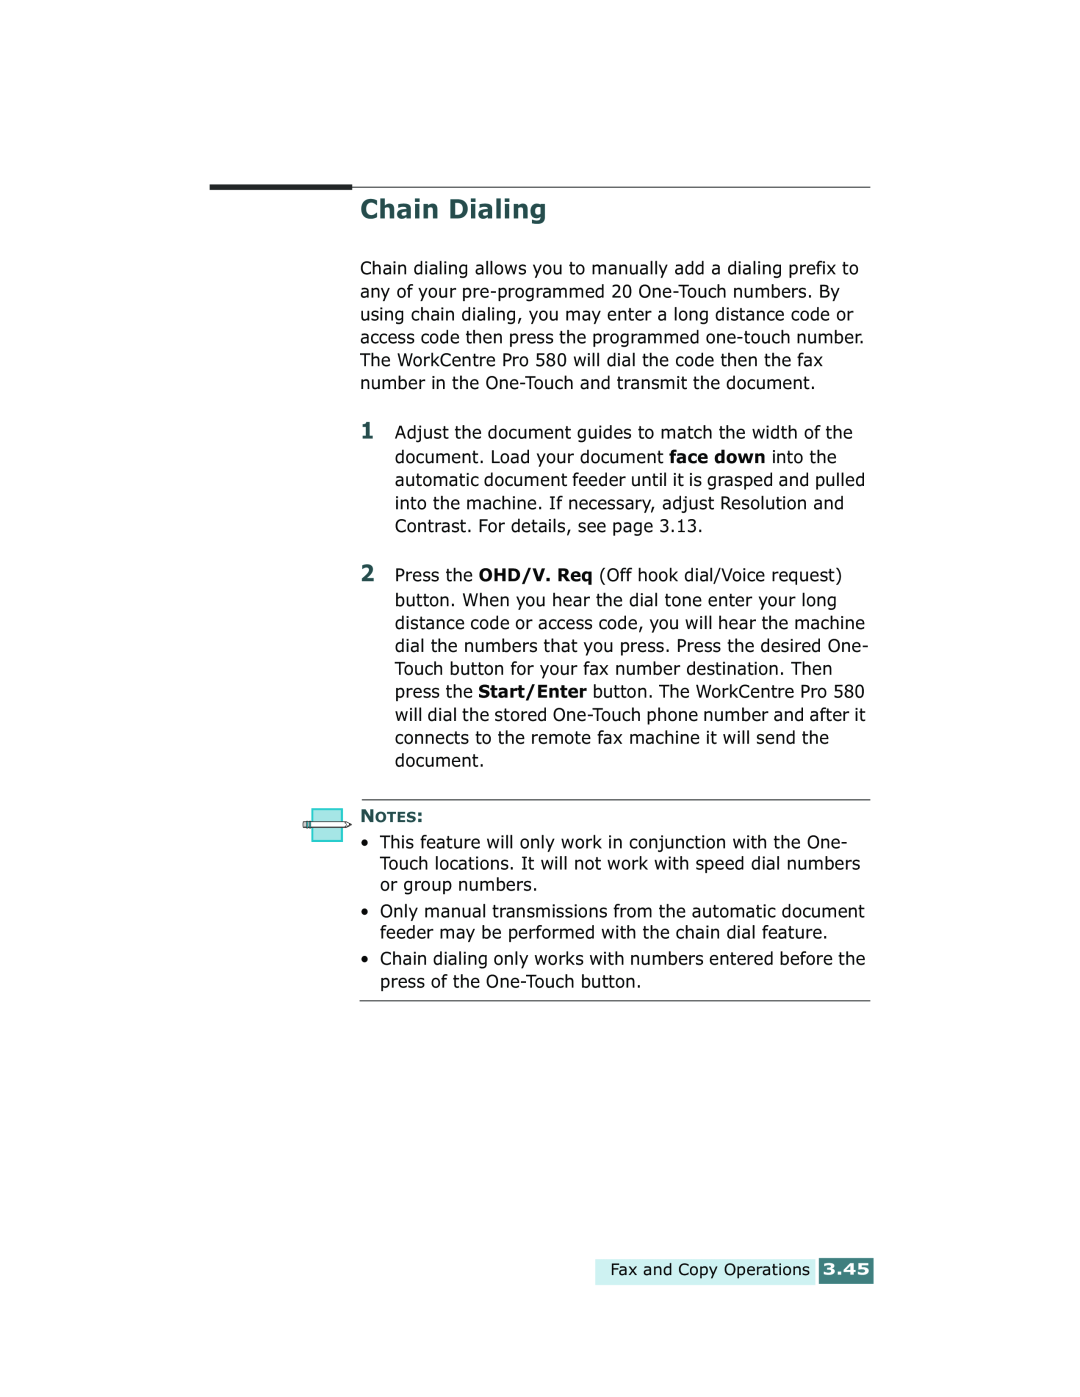 Xerox Pro 580 manual Chain Dialing 